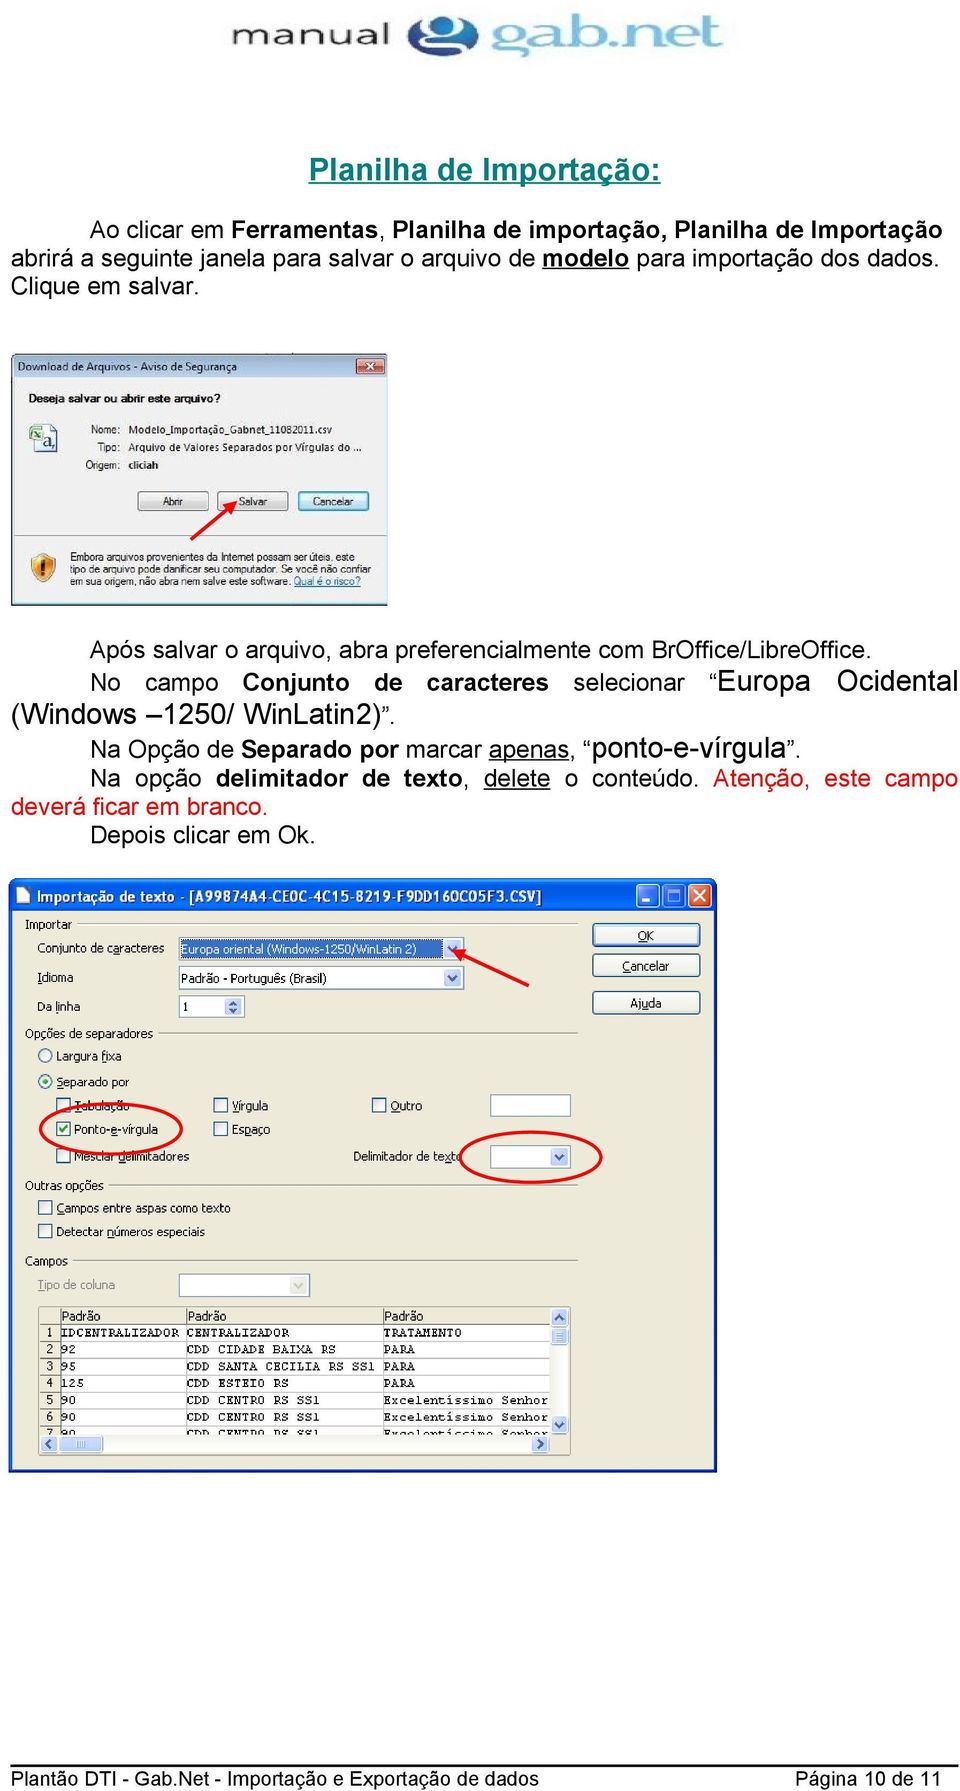 No campo Conjunto de caracteres selecionar Europa Ocidental (Windows 1250/ WinLatin2).